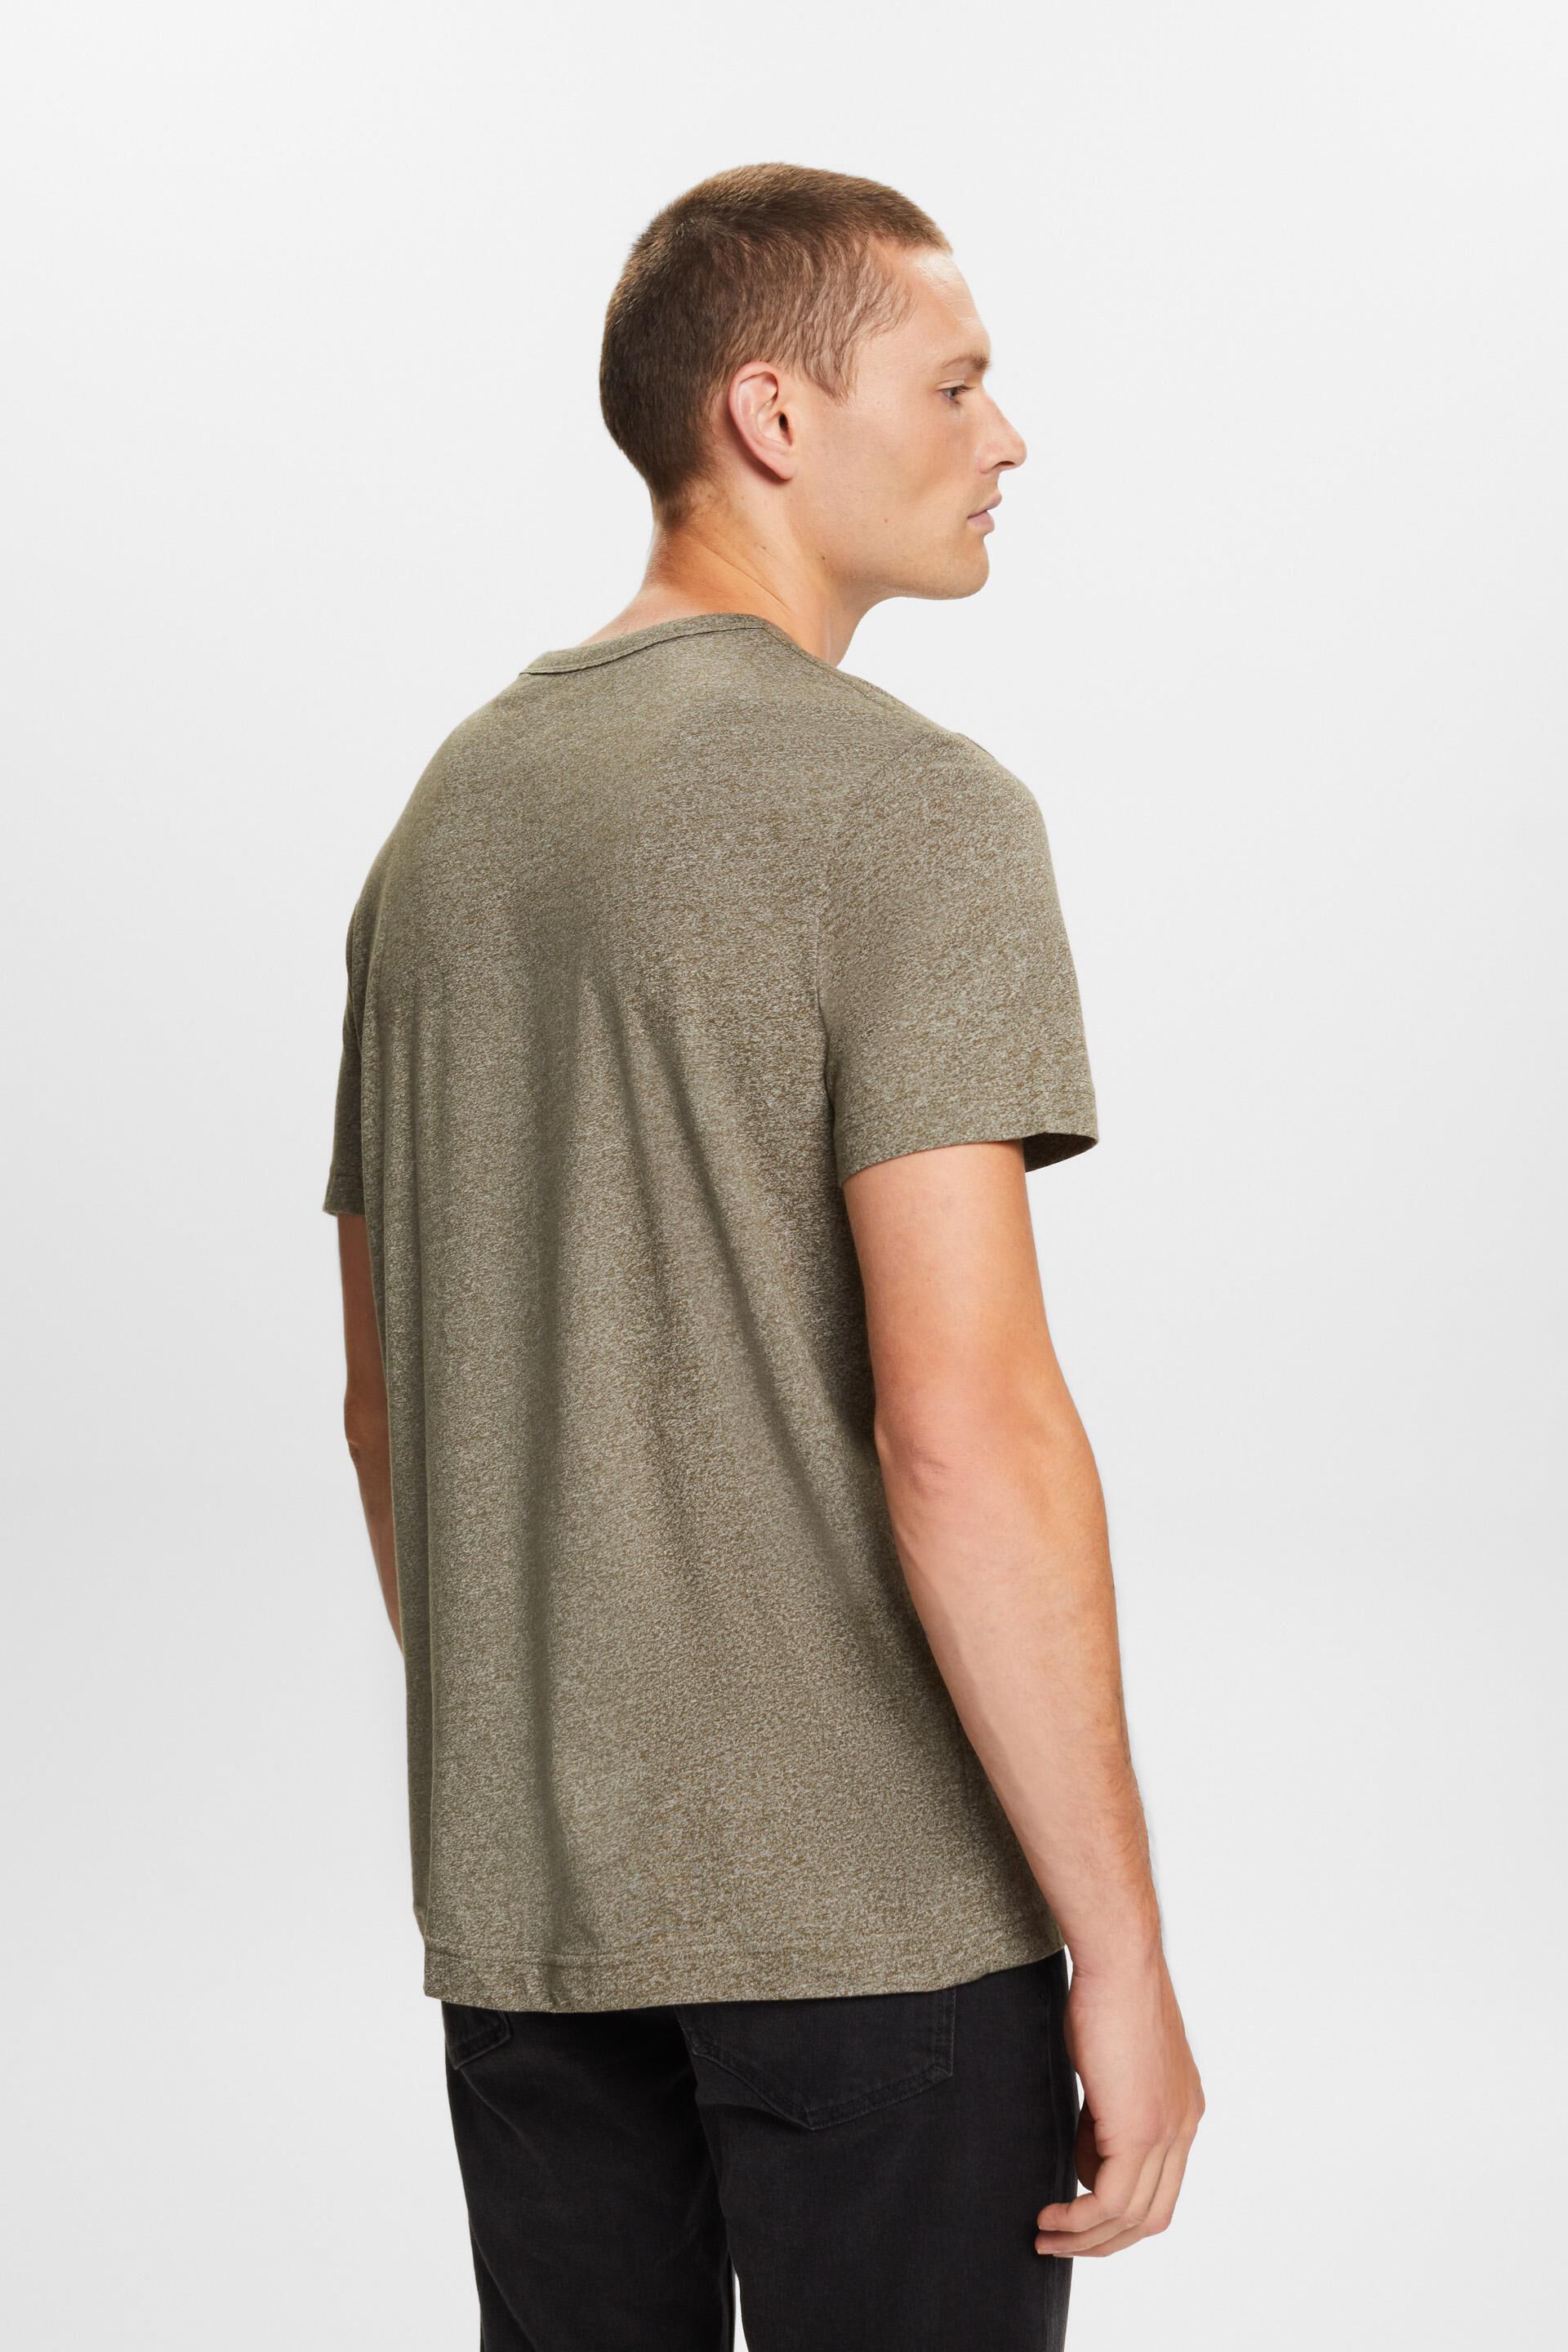 Esprit Jersey-T-Shirt mit Baumwollmischung Rundhalsausschnitt,